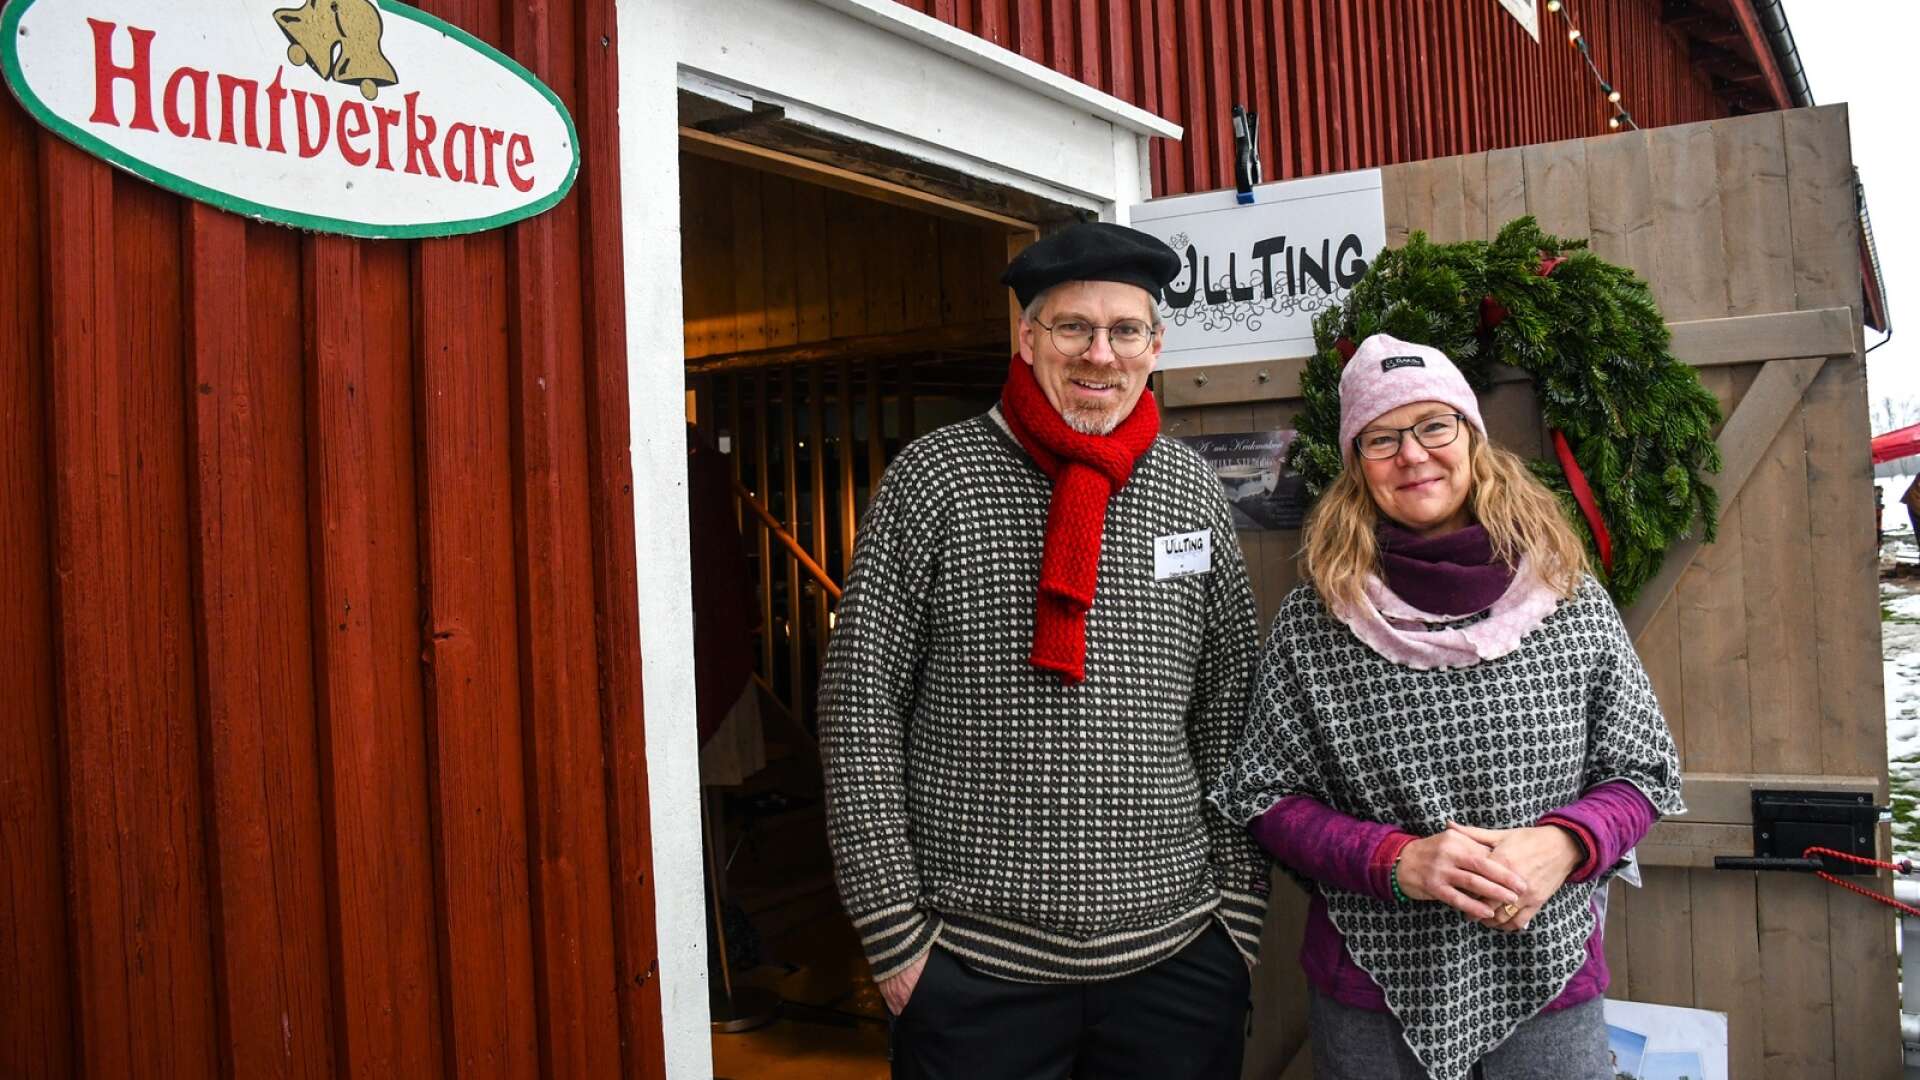 Jonas Haglund och Karin Mårs delade utställarplats under Jul på Mårbacka.